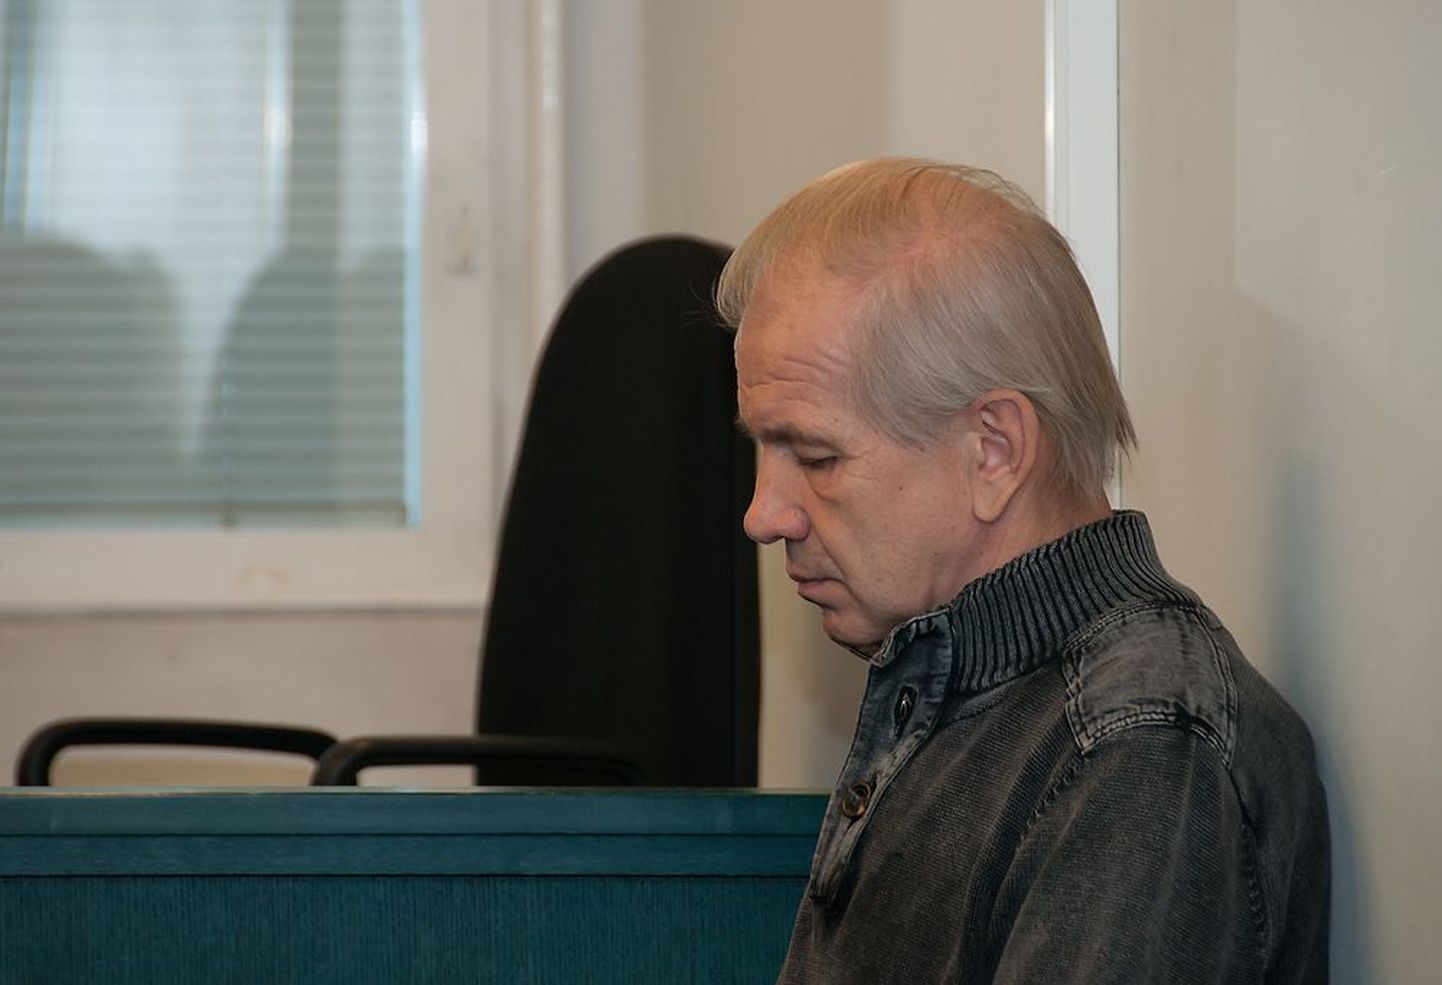 Riigireetmises süüdi mõistetud Vladimir Veitman täna, 30. oktoobril kohtus.